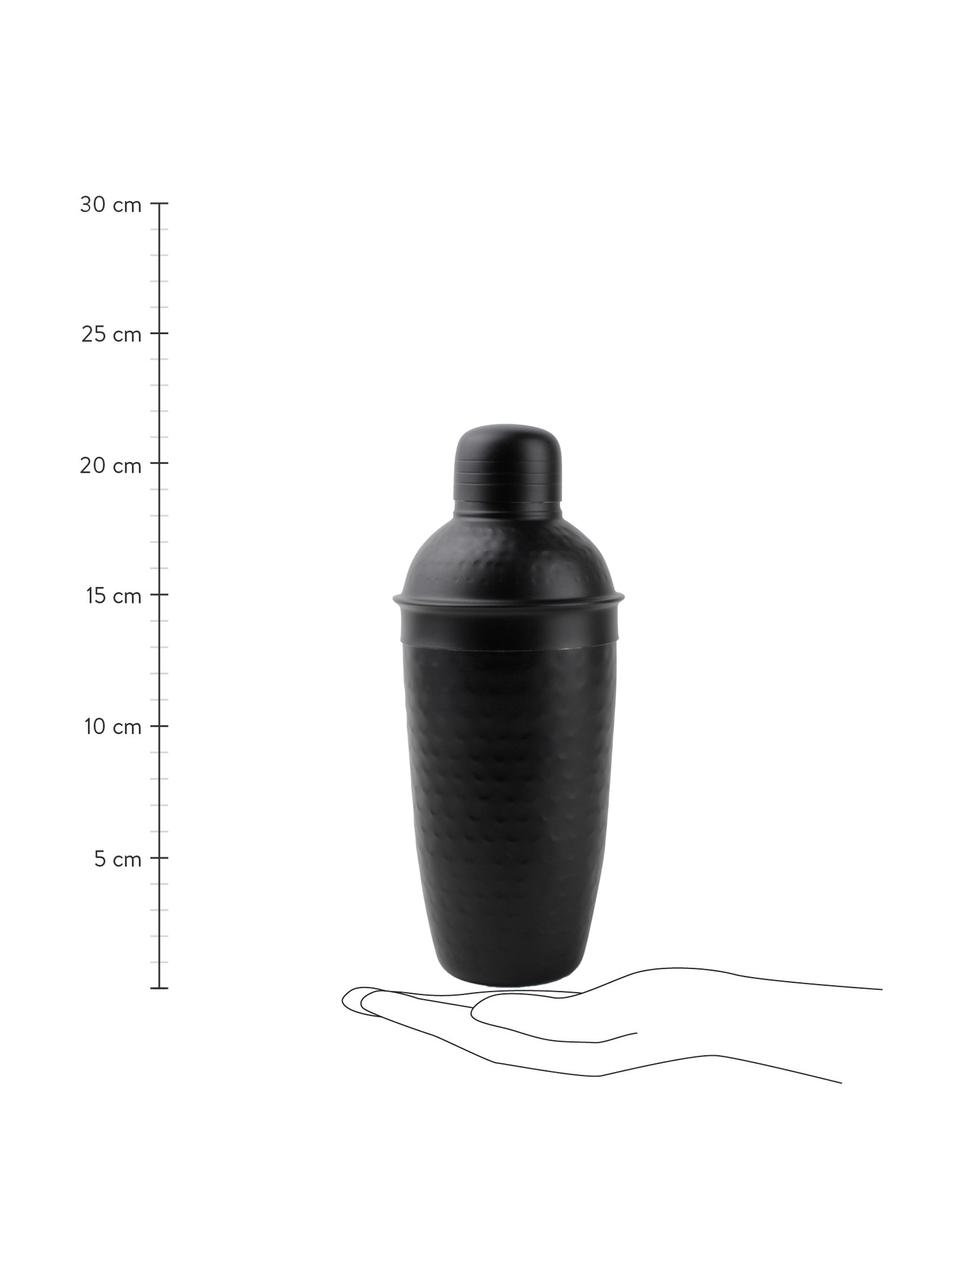 Cocktail-Shaker Onur in Schwarz mit gehämmerter Oberfläche, Edelstahl, beschichtet und gehämmert, Schwarz, Ø 9 x H 22 cm